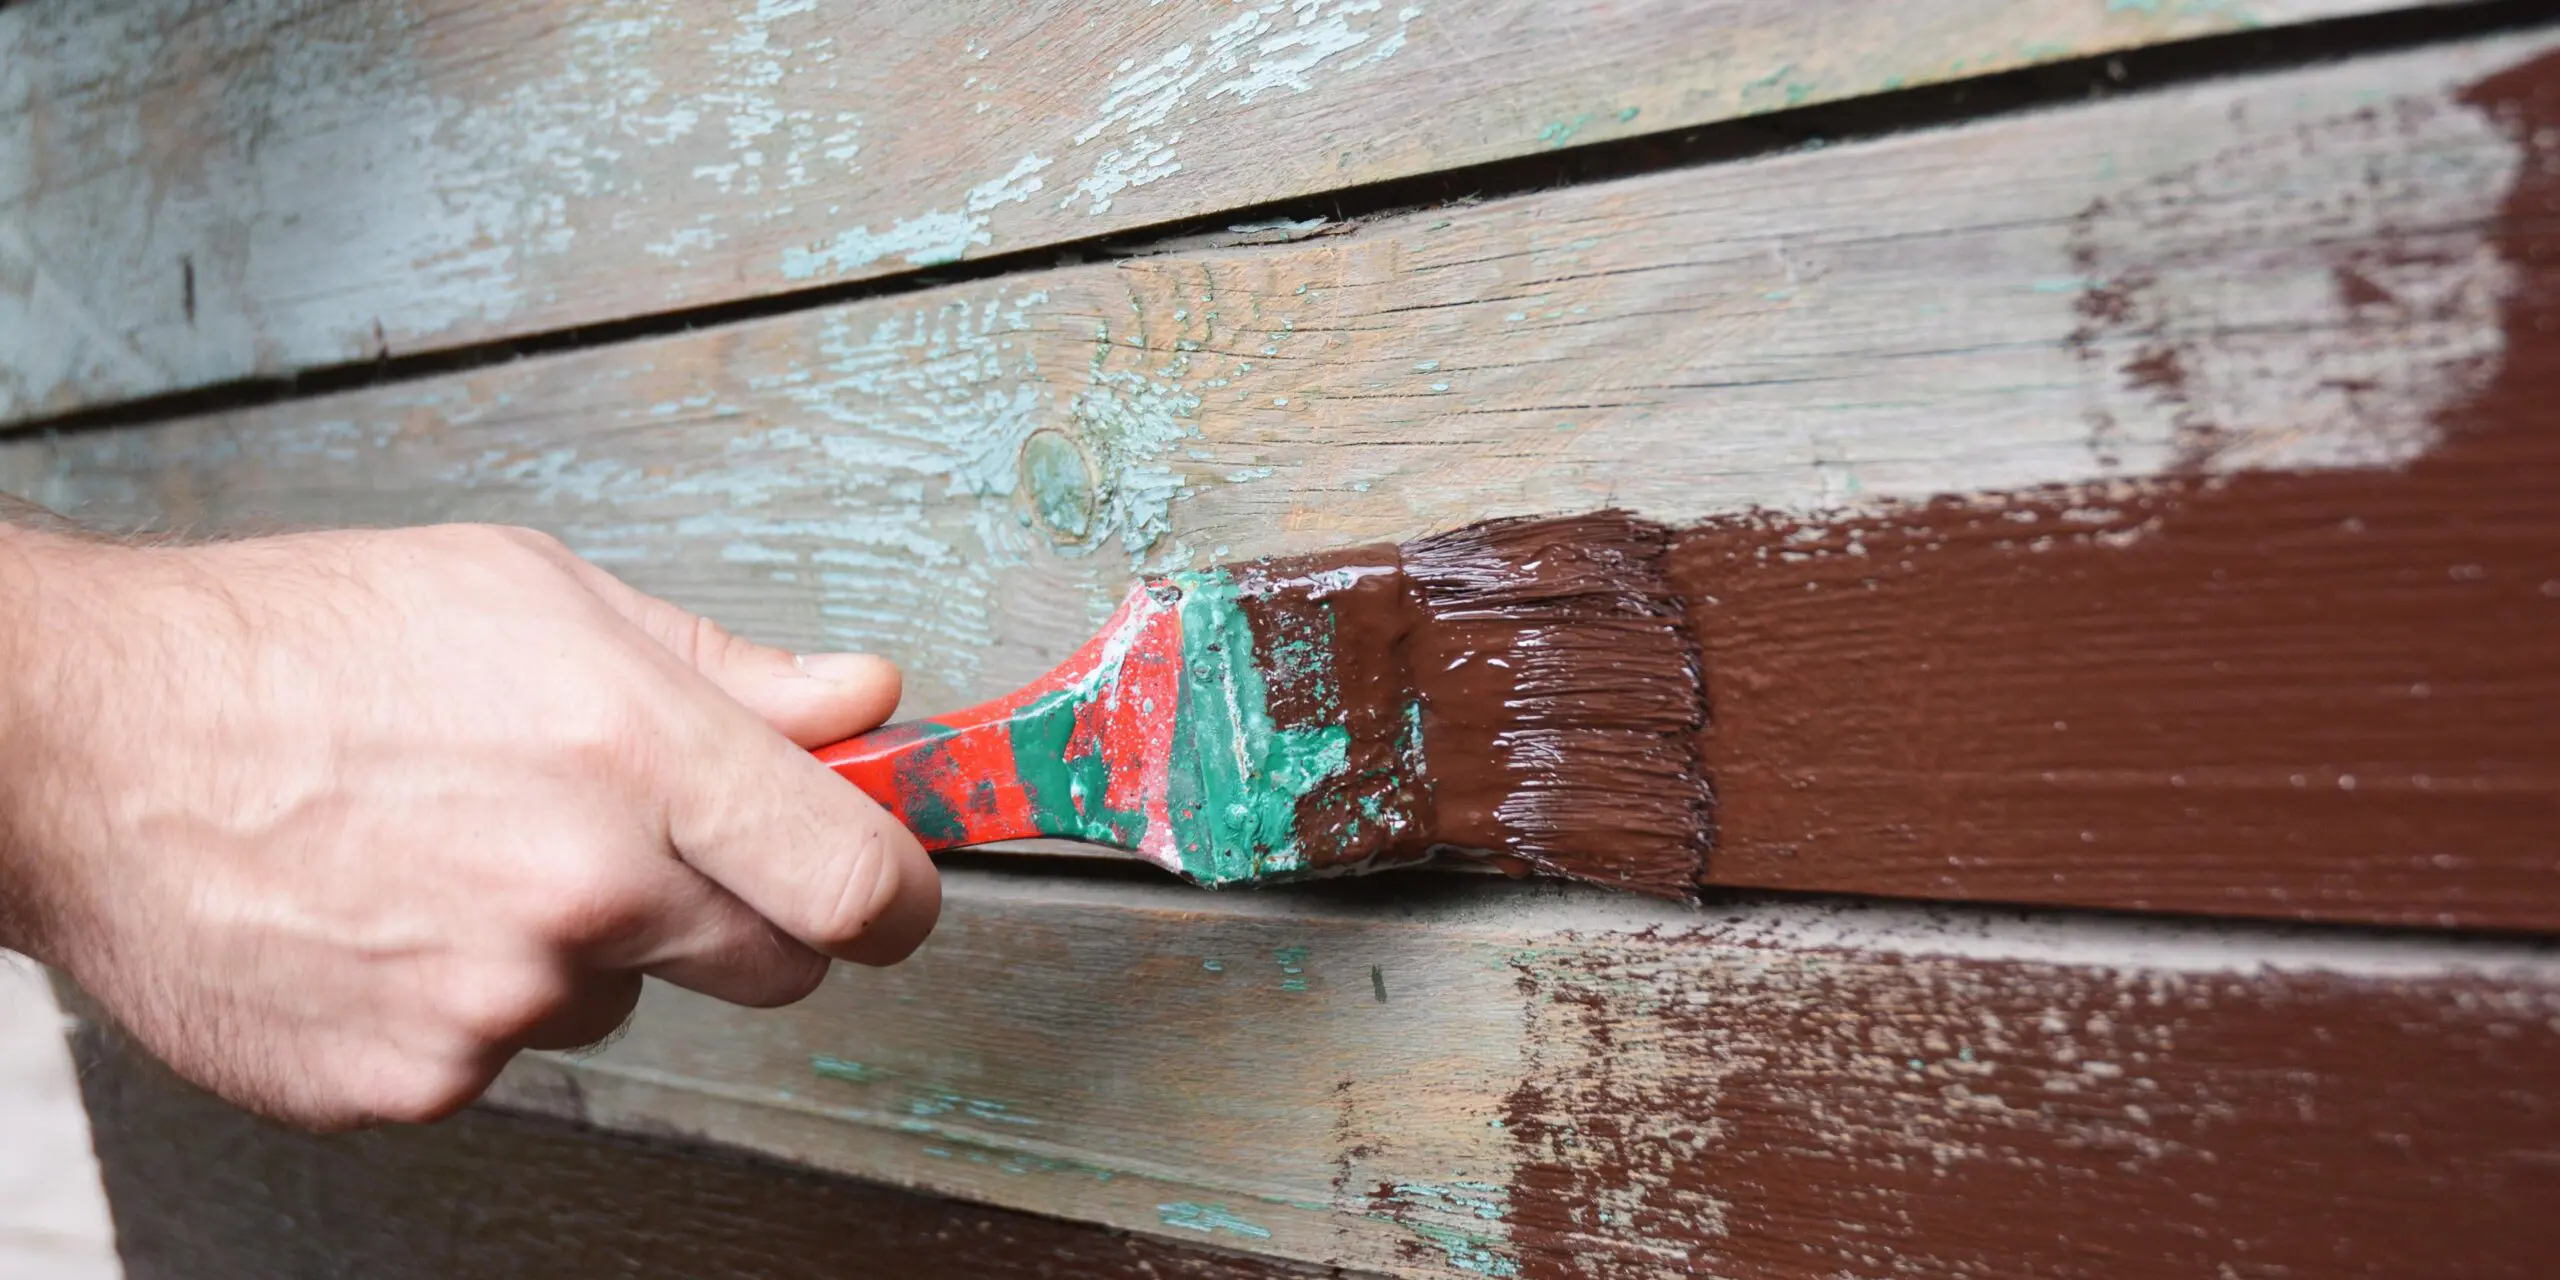 Protección de la madera antes de pintar o barnizar